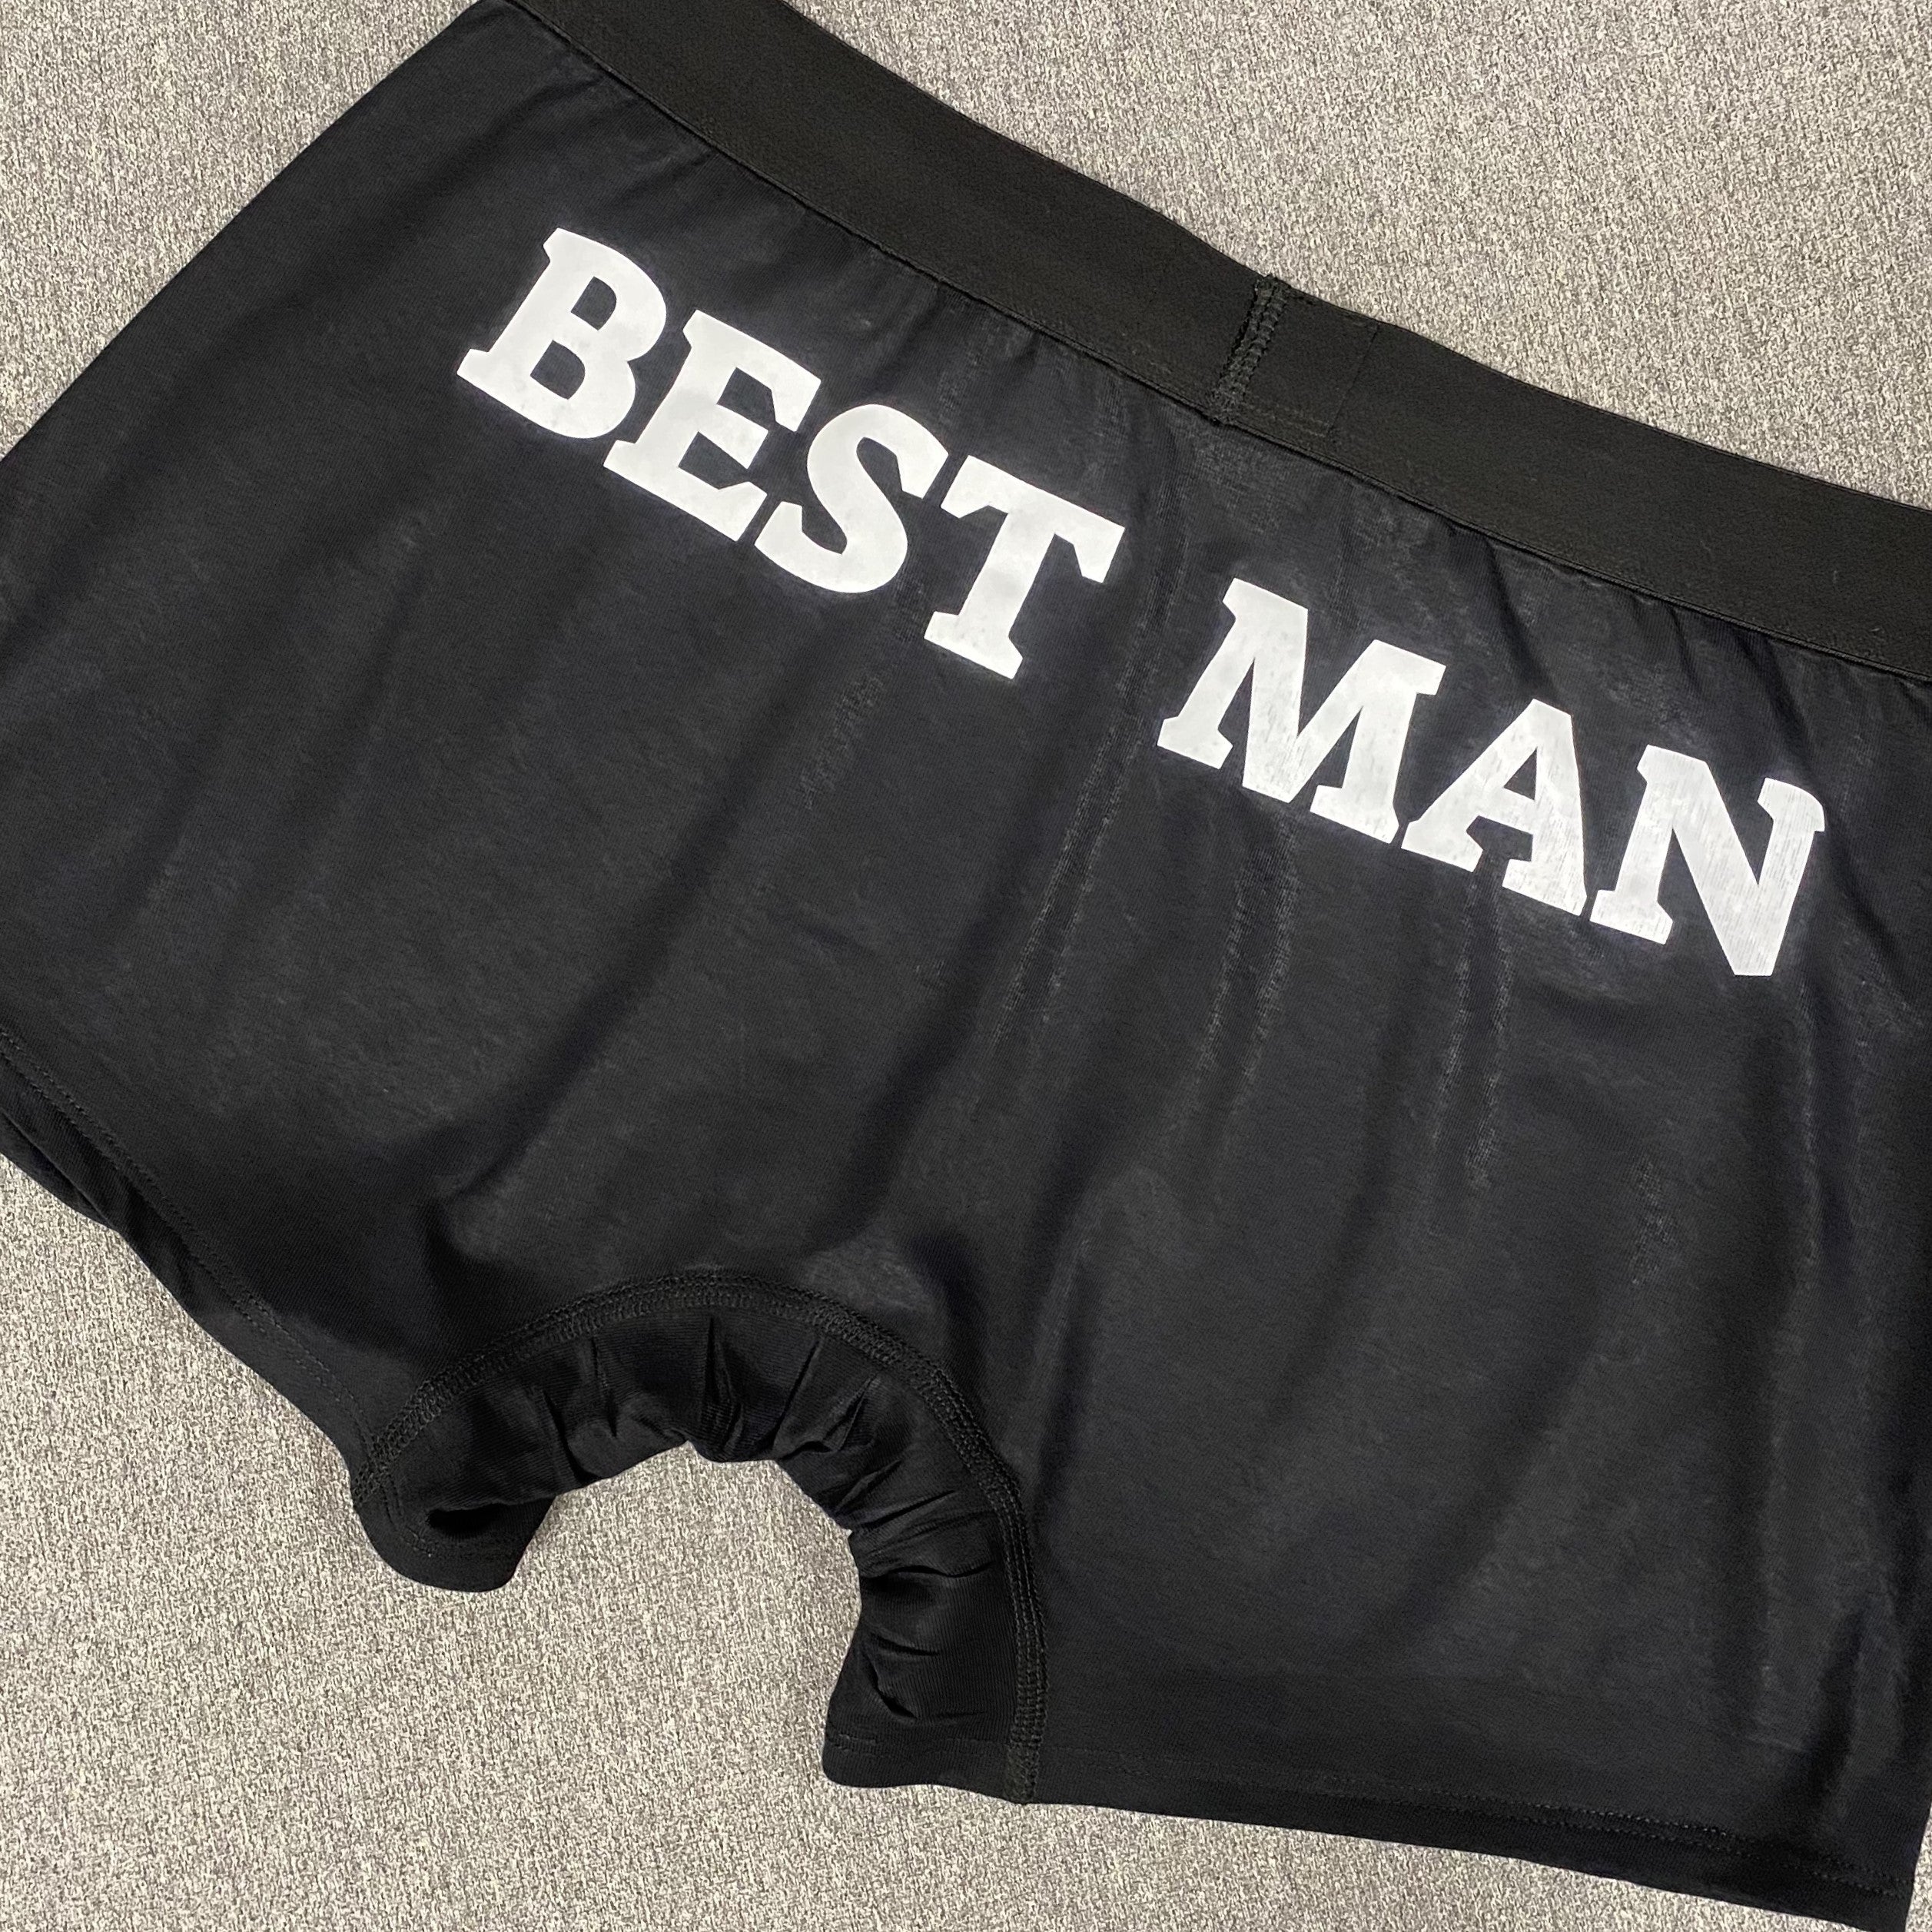 Best man | Boxer briefs underwear